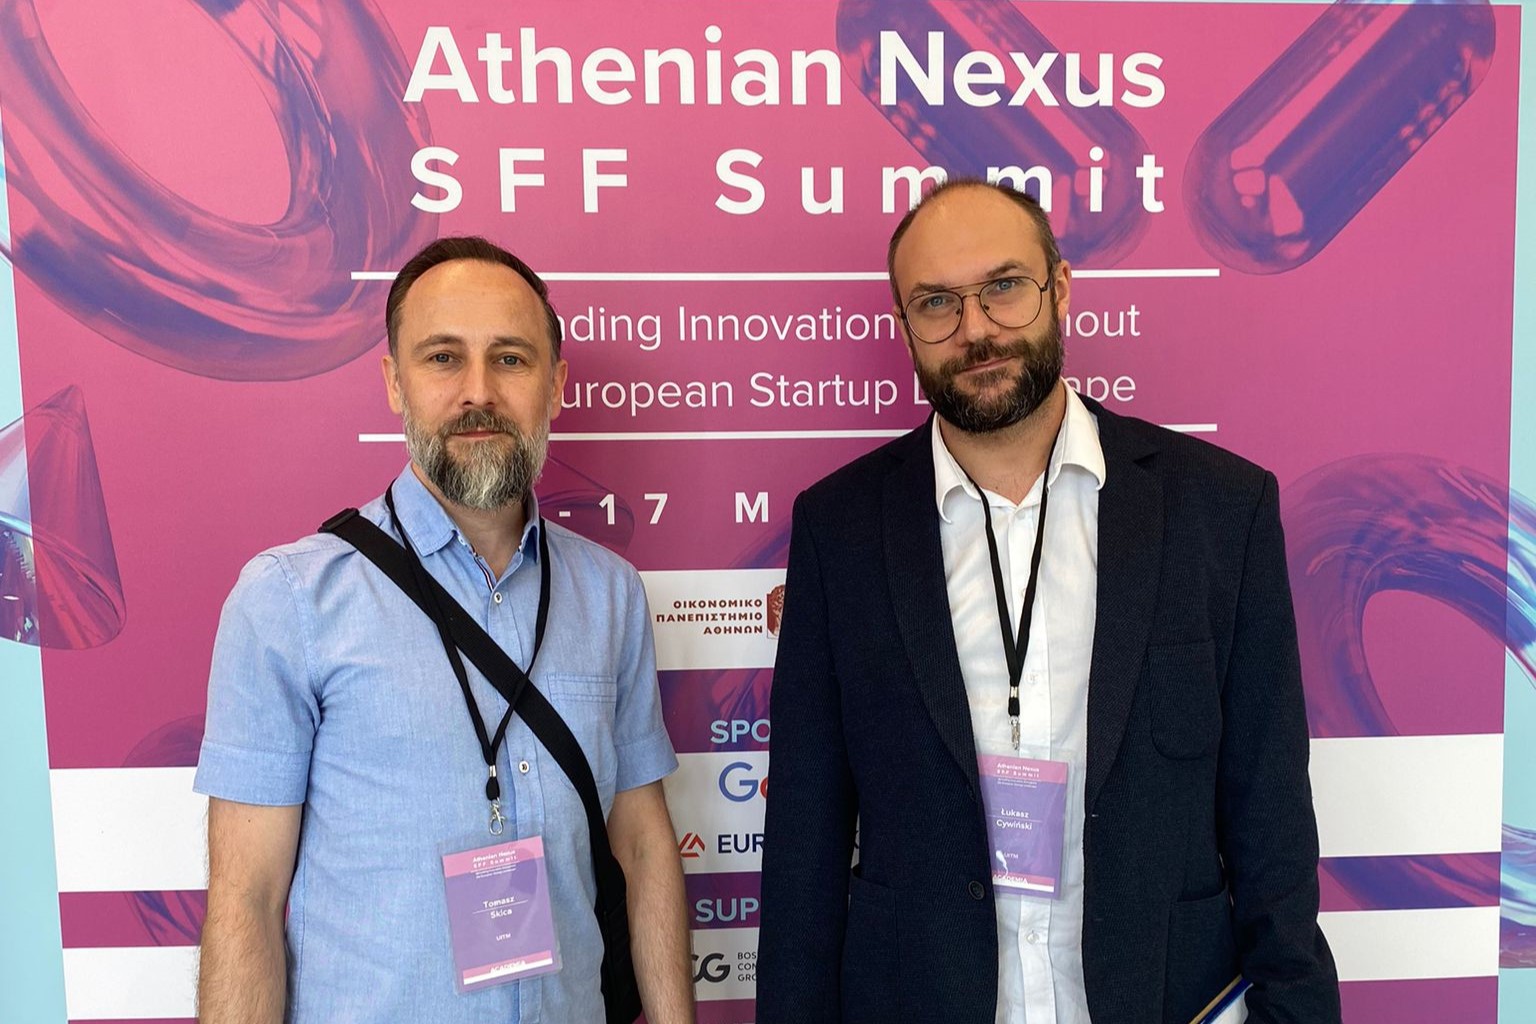 Konferencja w Atenach - dwóch mężczyzn pozuje do zdjęcia